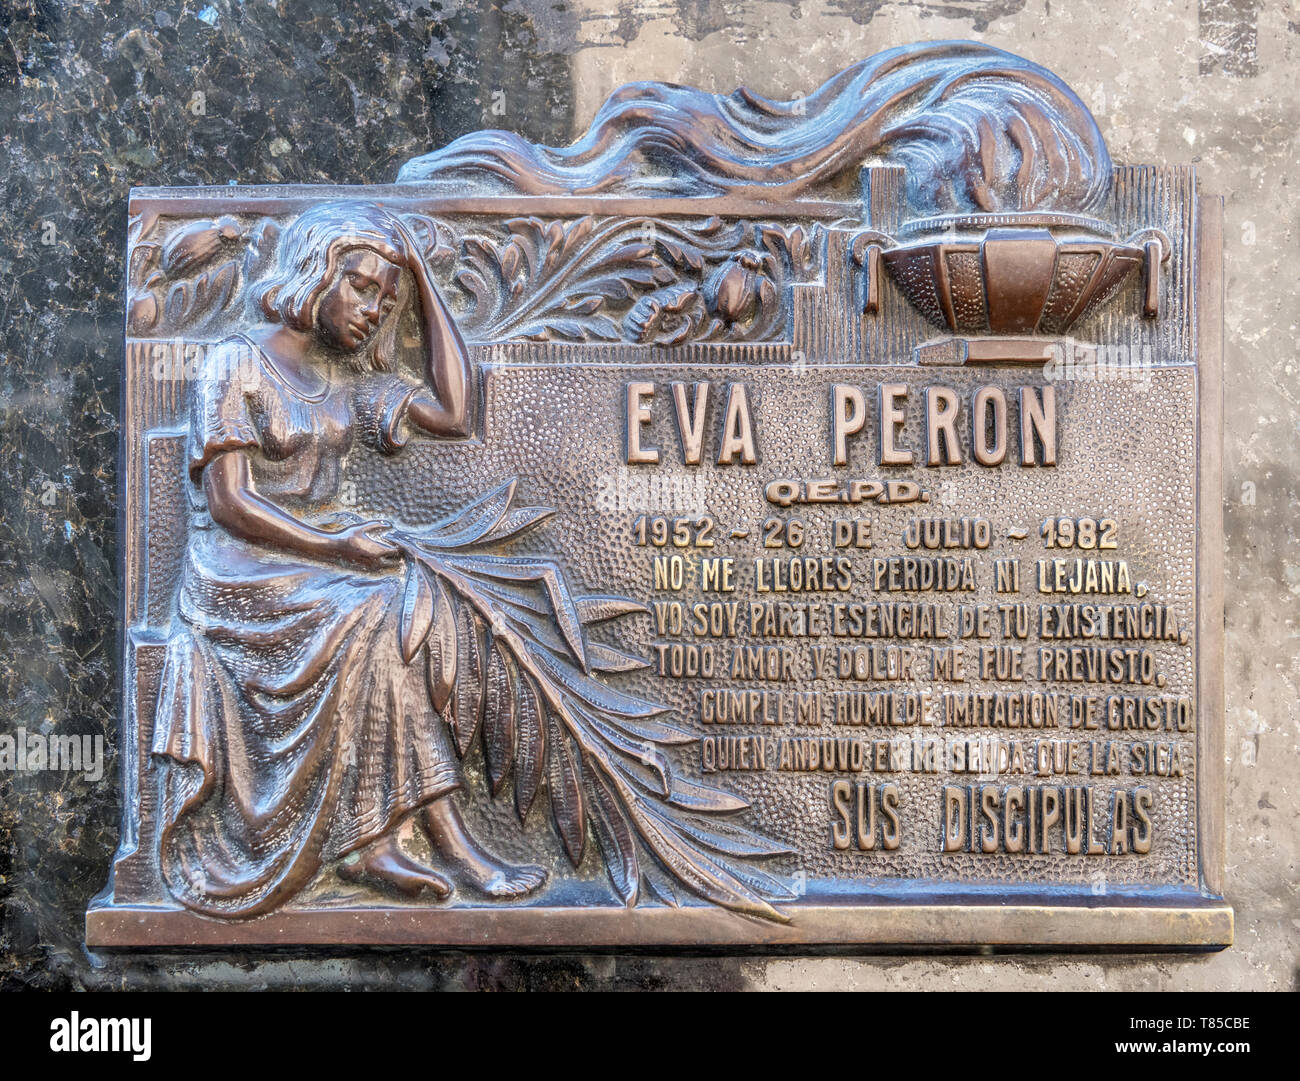 Plaque sur la tombe d'Eva Peron dans le Cementerio de la Recoleta (Cimetière) de la Recoleta, Buenos Aires, Argentine Banque D'Images